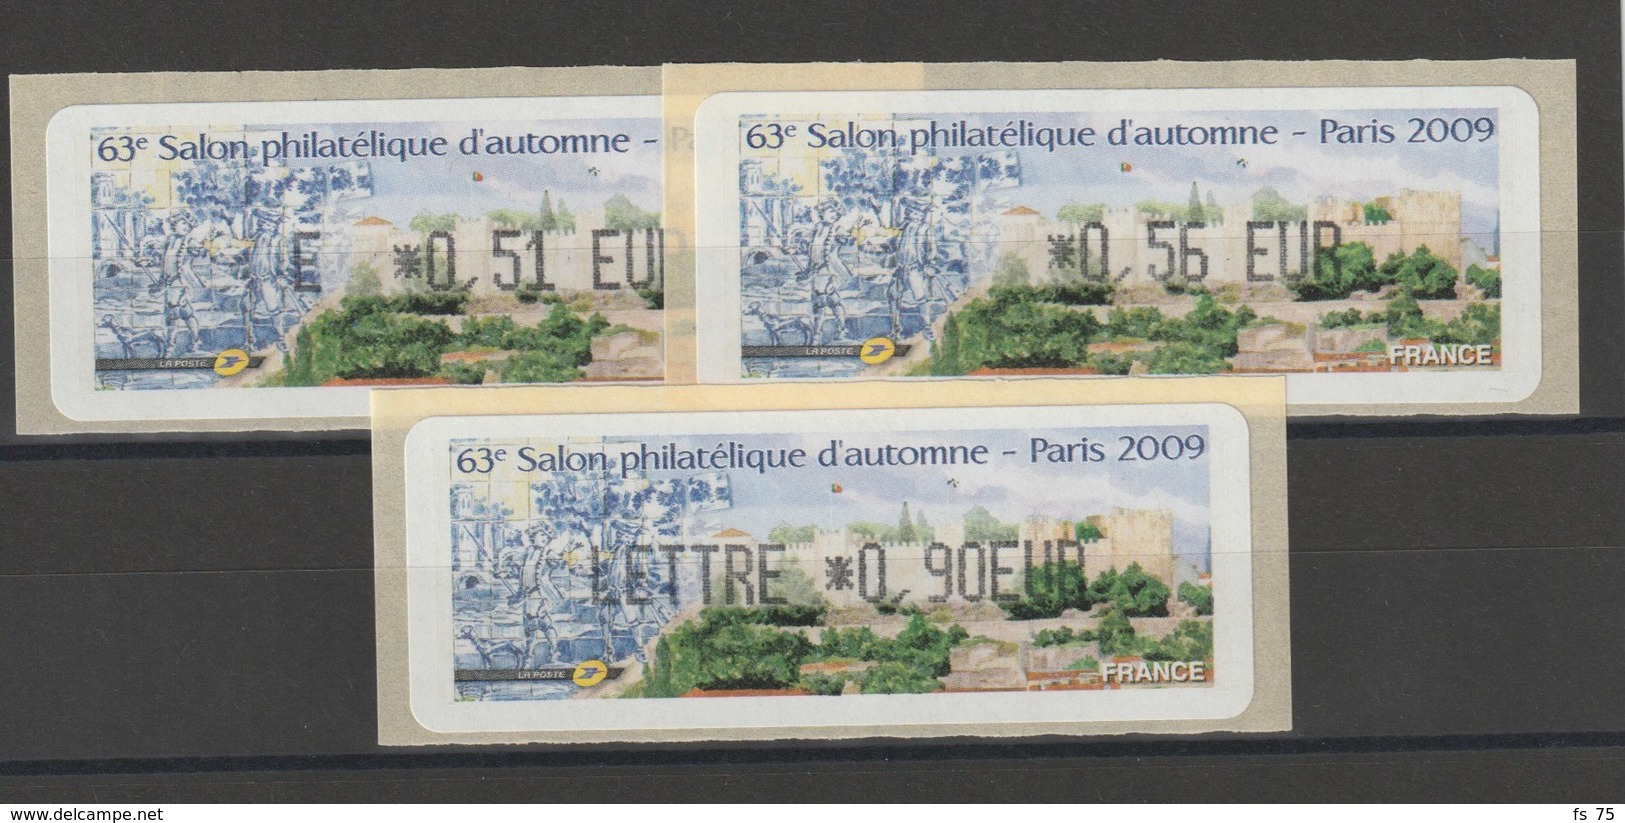 FRANCE - 3 VIGNETTES 0,51€, 0,56€ ET 0,90€ - 63E SALON PHILATELIQUE D'AUTOMNE - PARIS 2009 - 1999-2009 Viñetas De Franqueo Illustradas